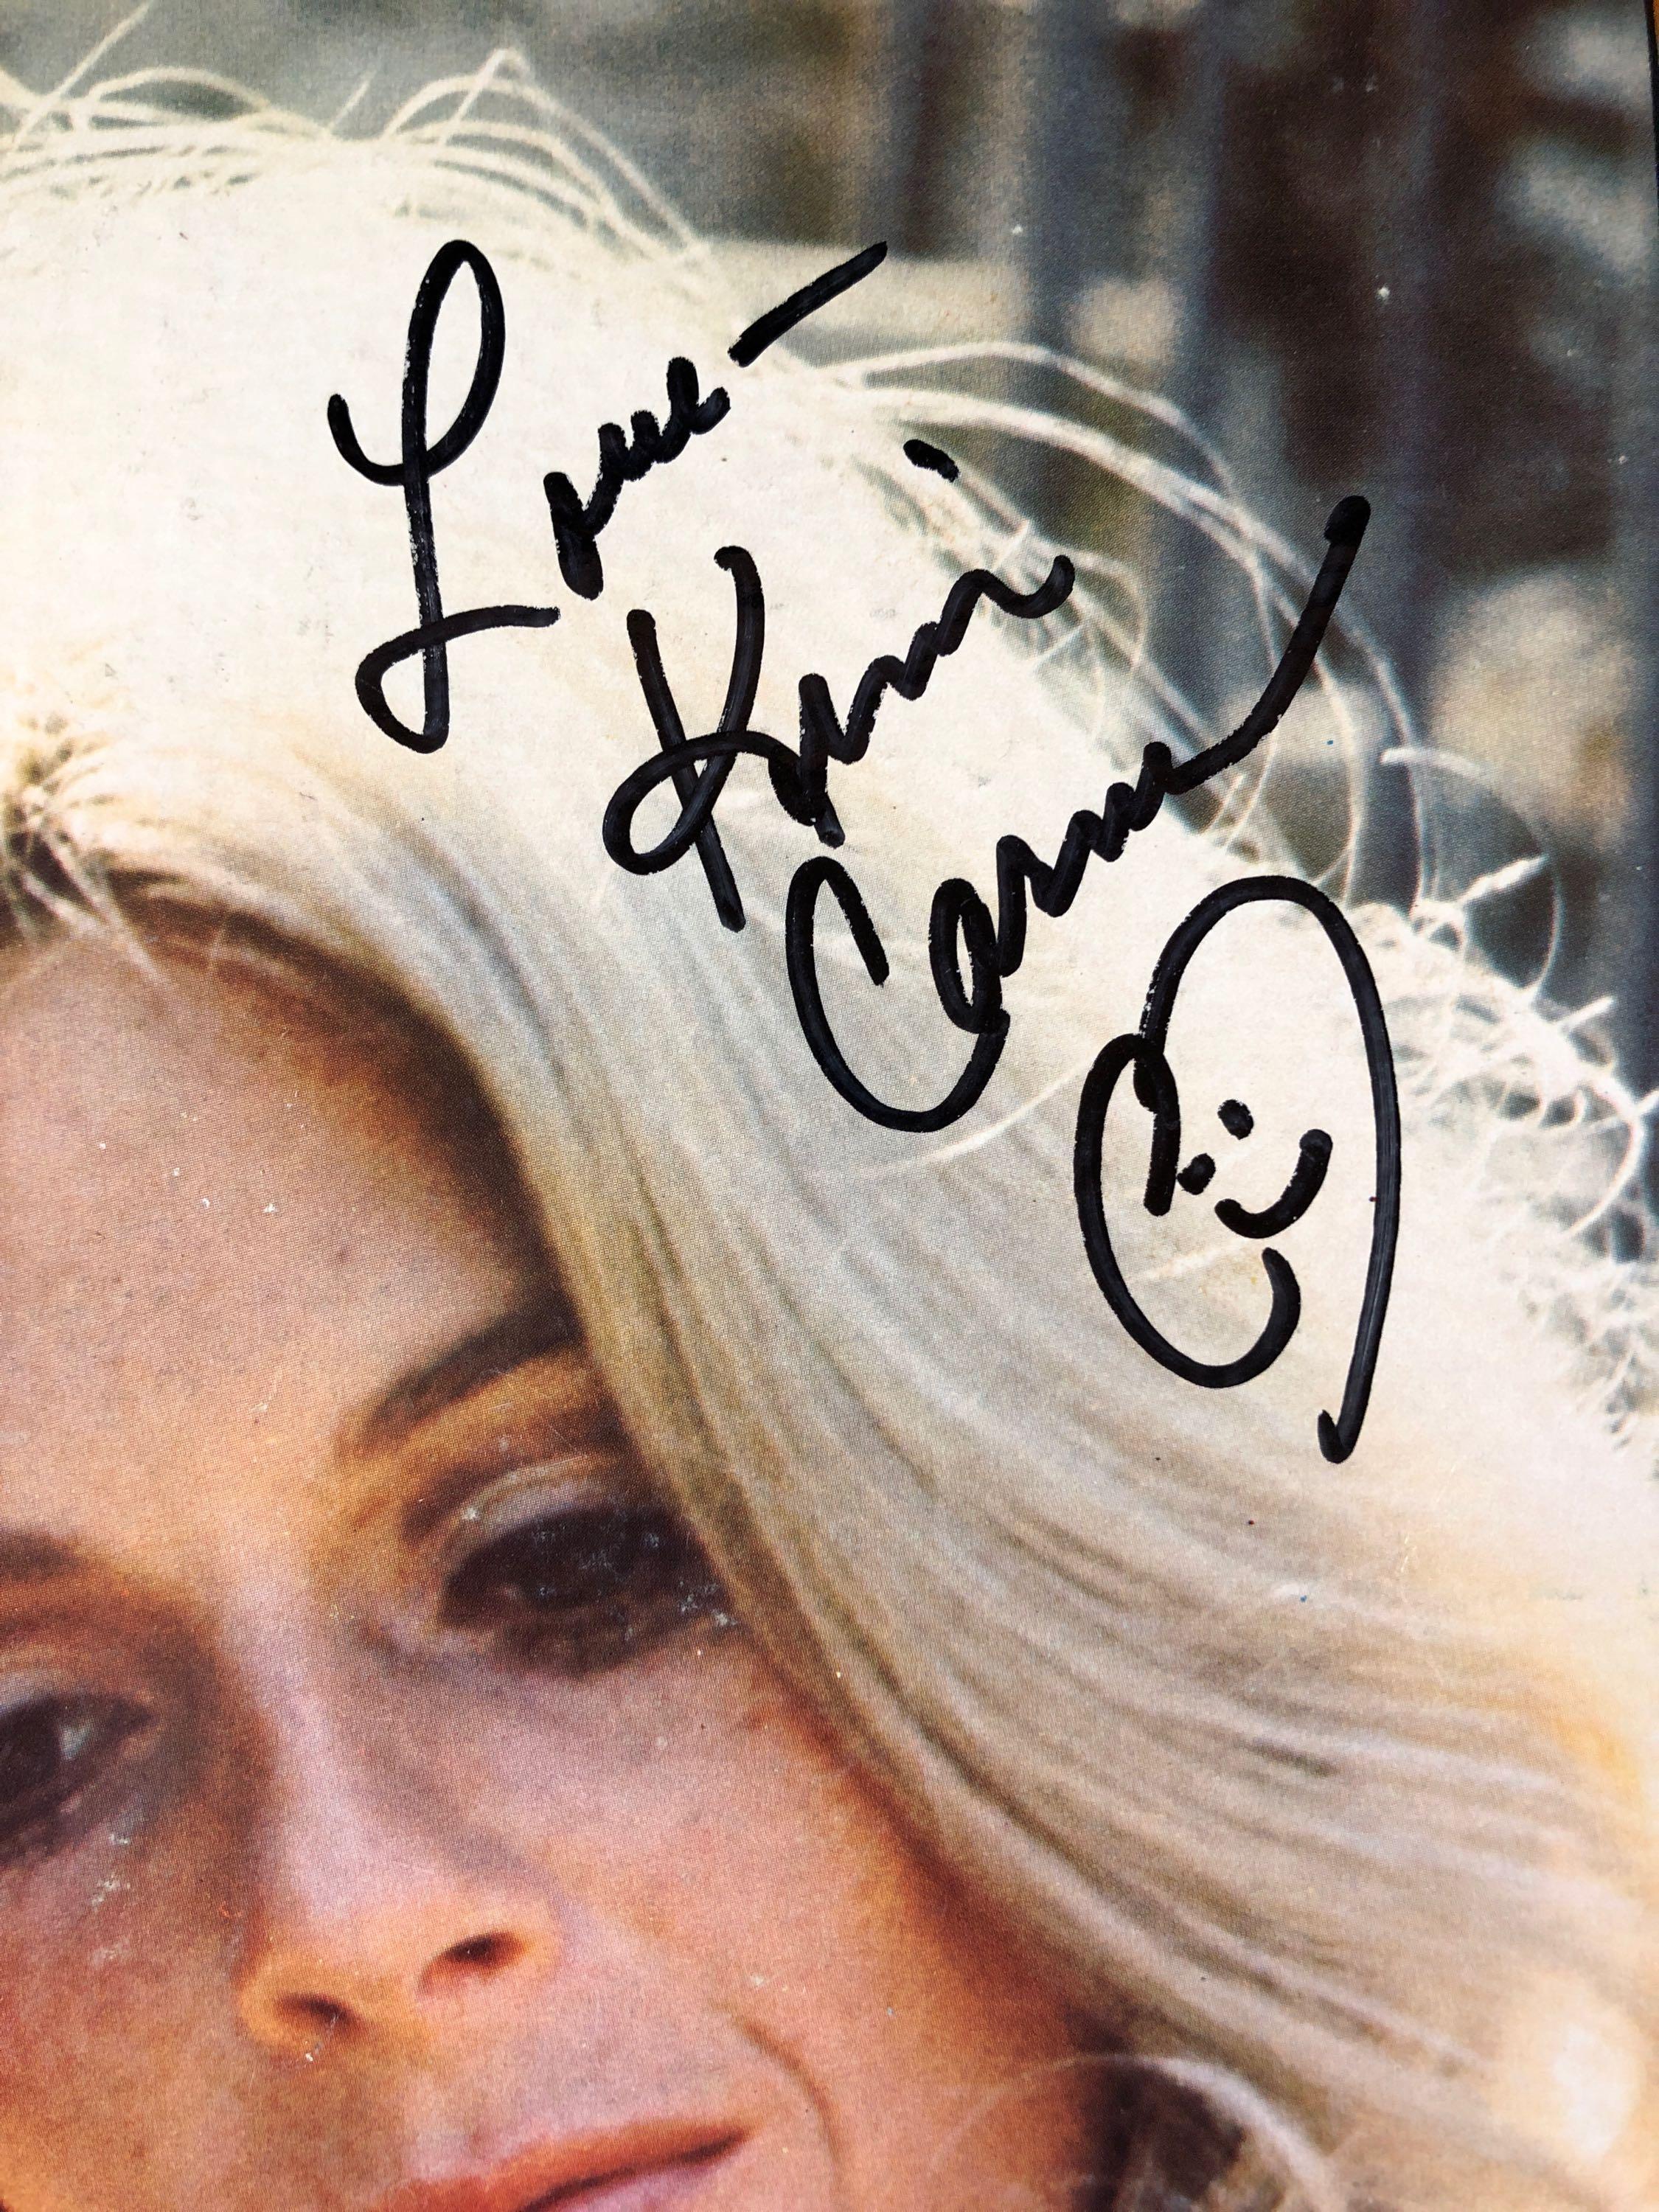 Kim Carnes "Rest on Me" Autographed Album